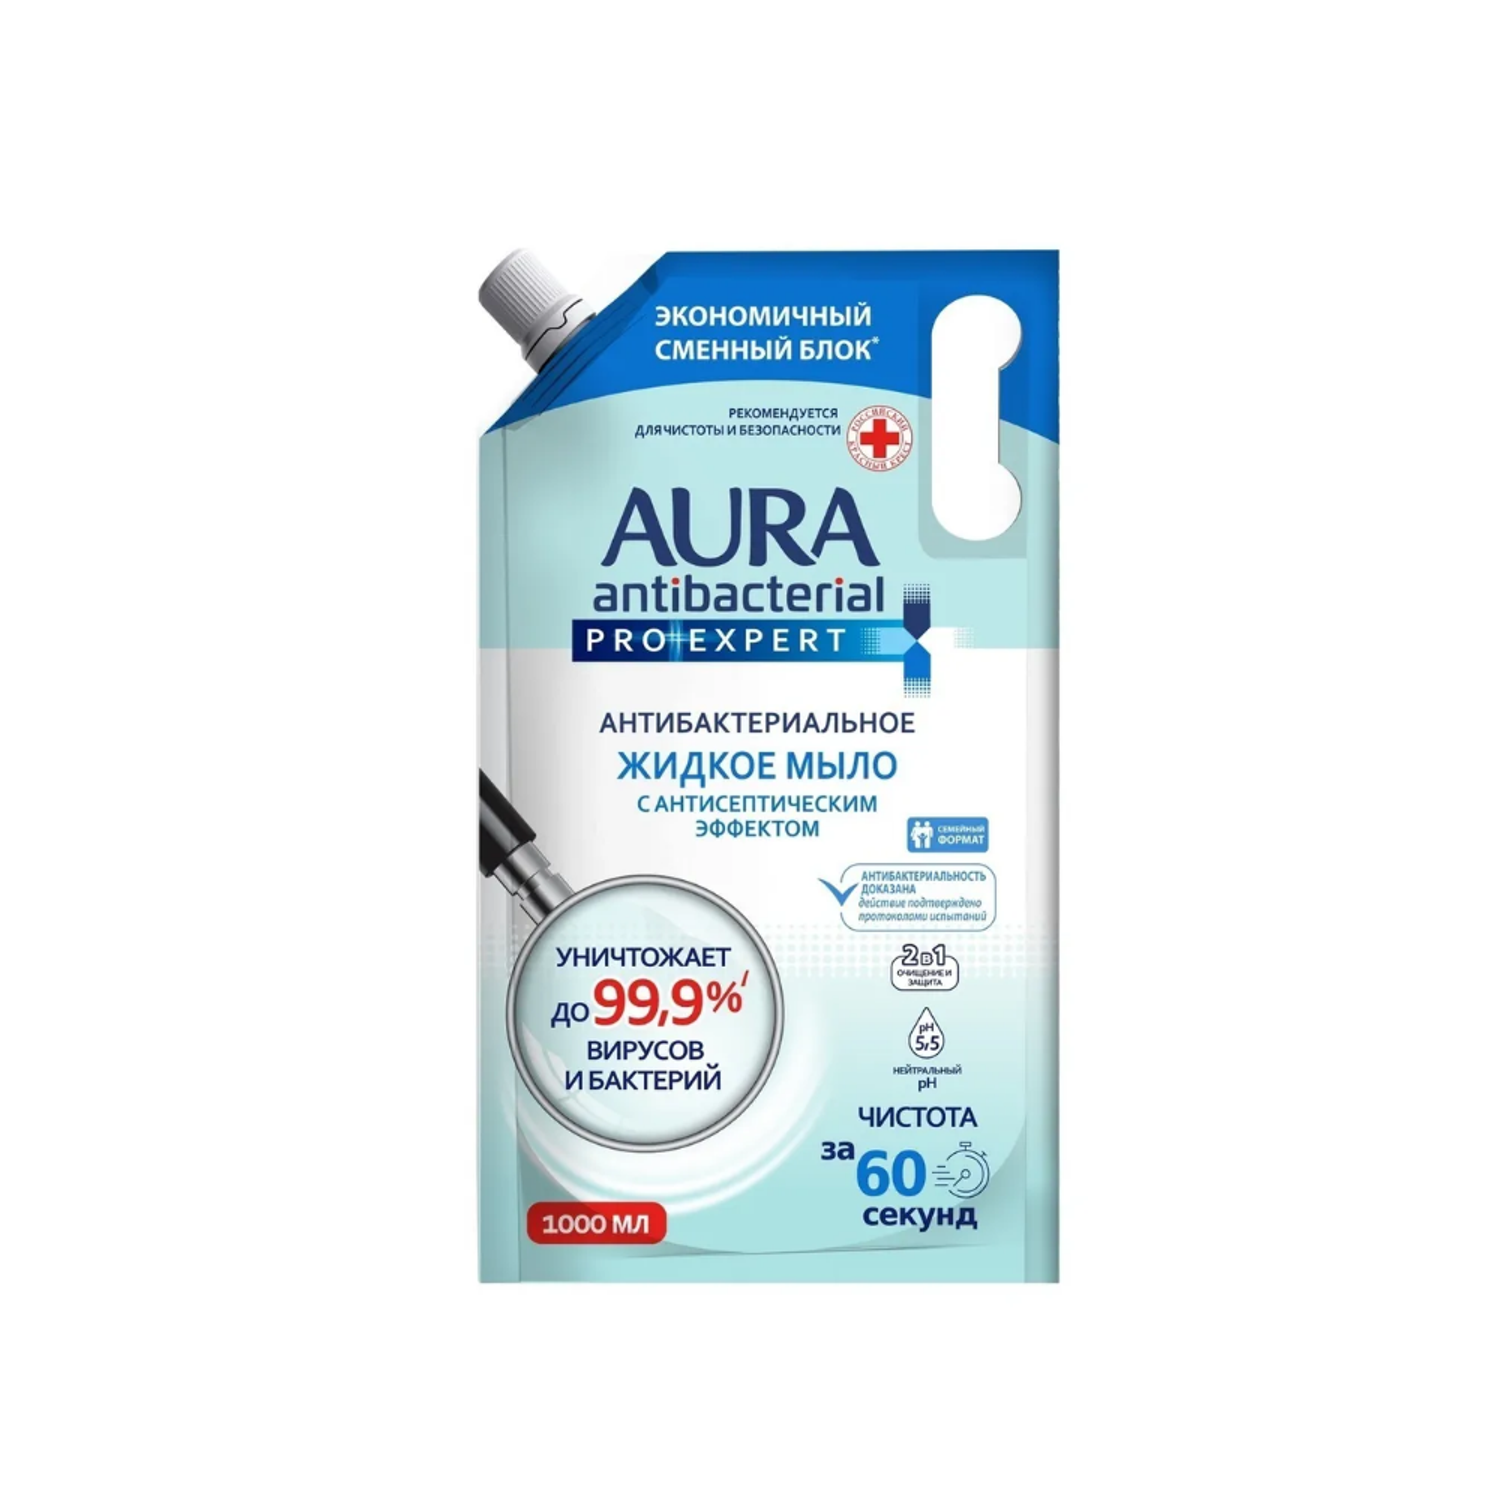 Жидкое мыло AURA антибактериальное Pro expert 1000 мл - фото 1